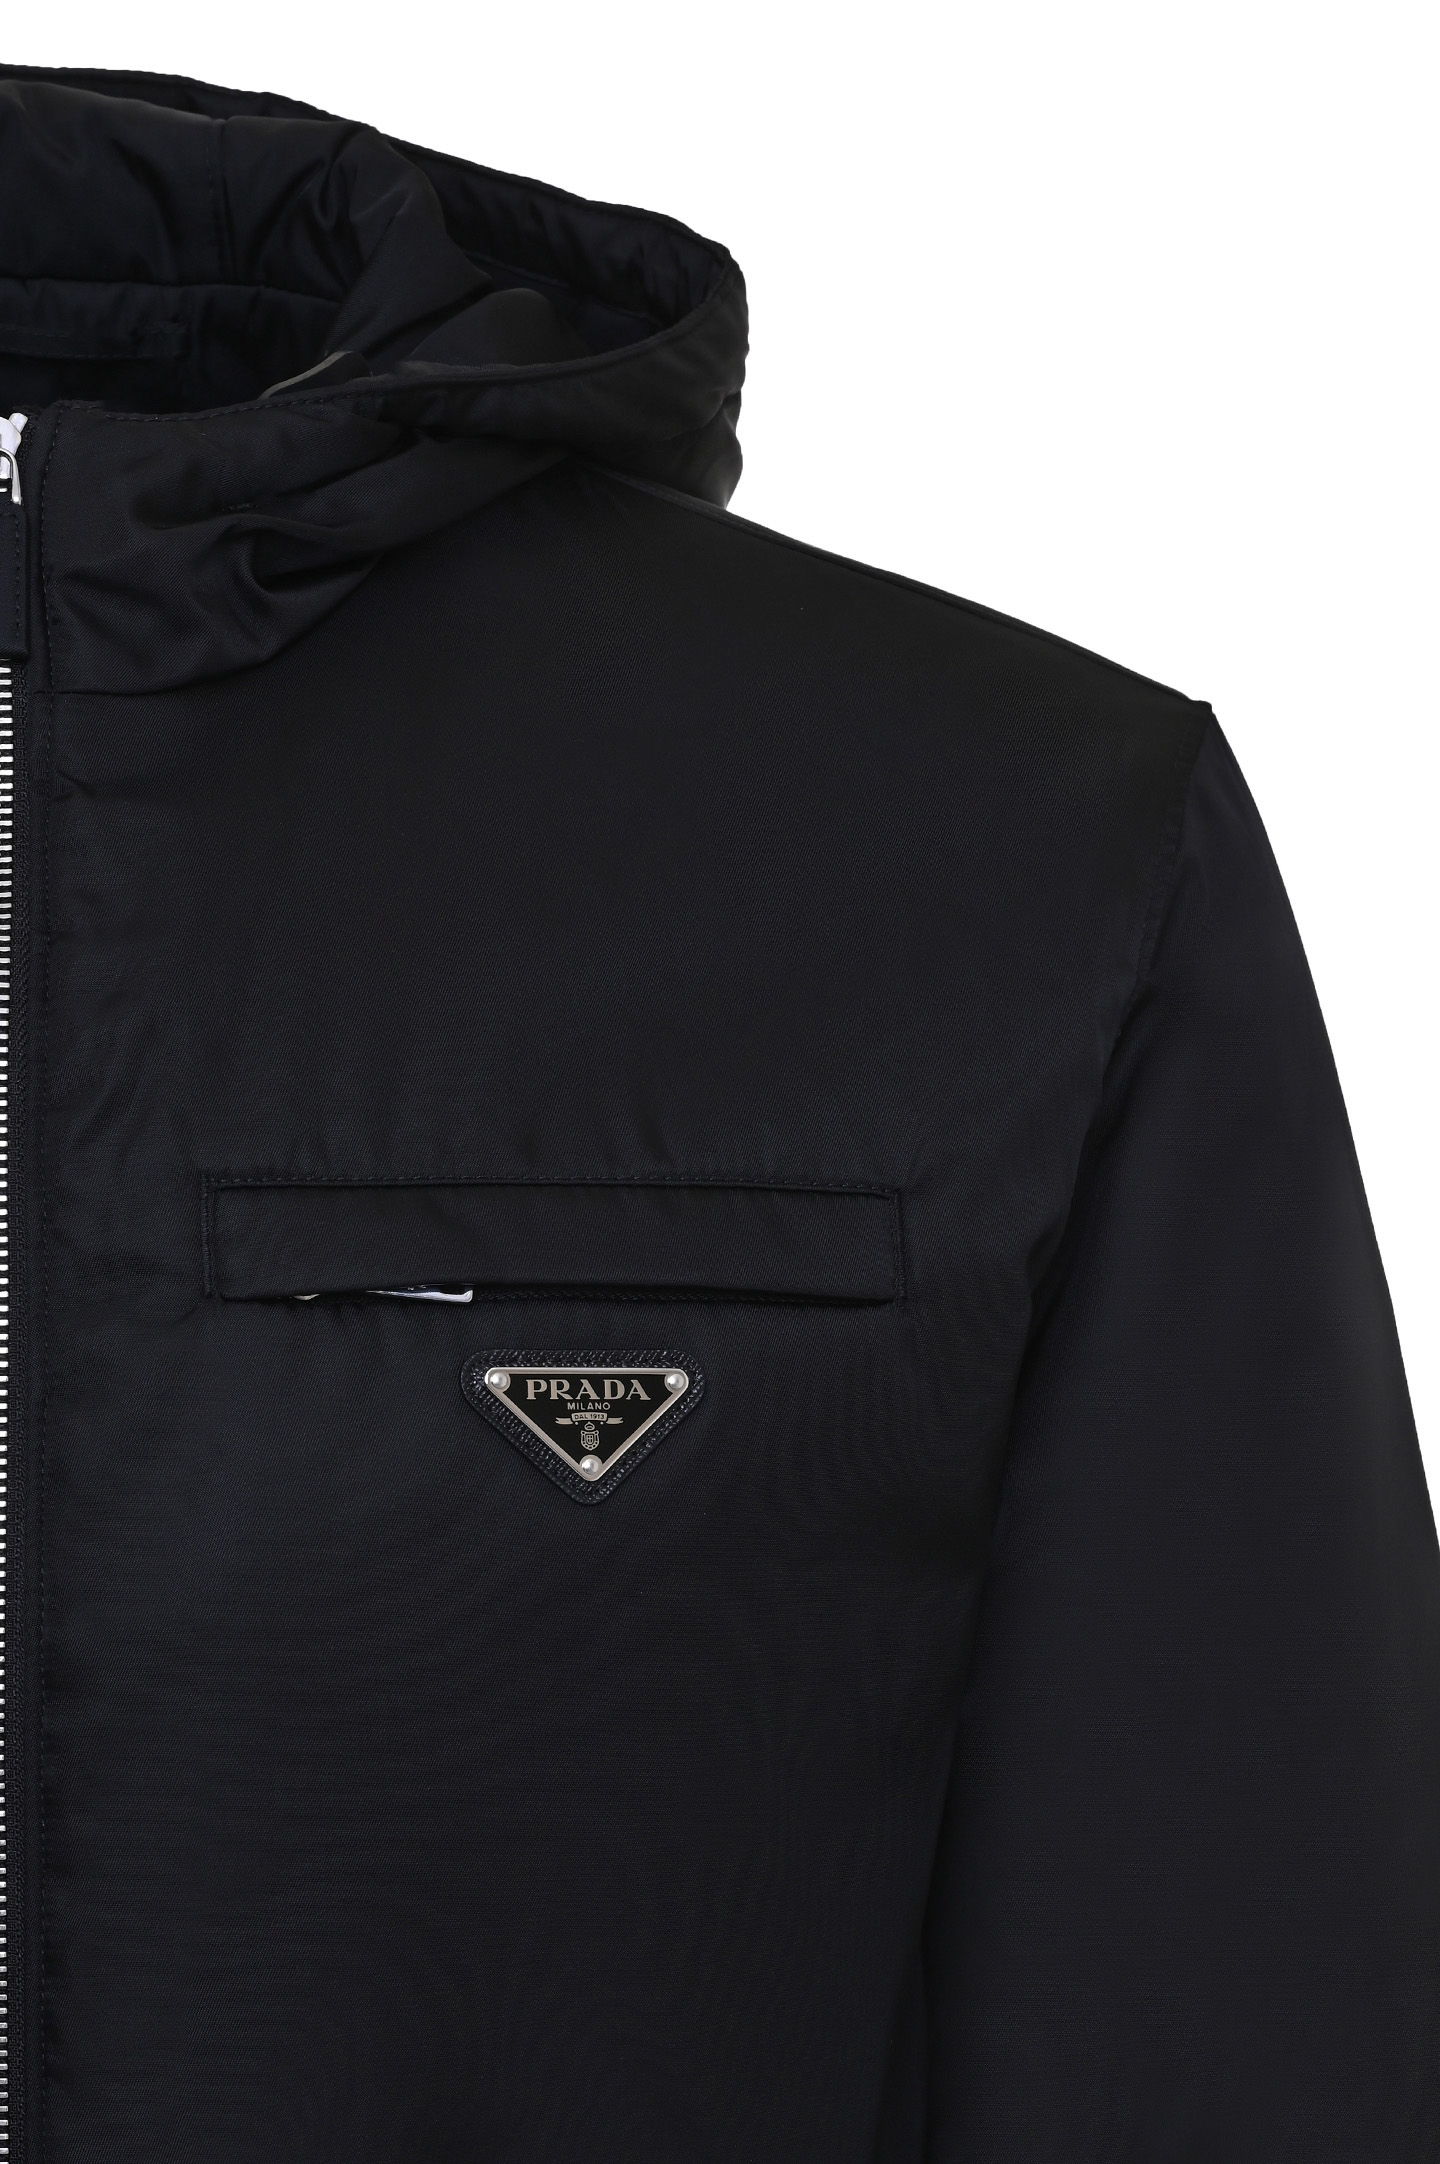 Куртка PRADA SGB7761WQ8 F0002, цвет: Черный, Мужской